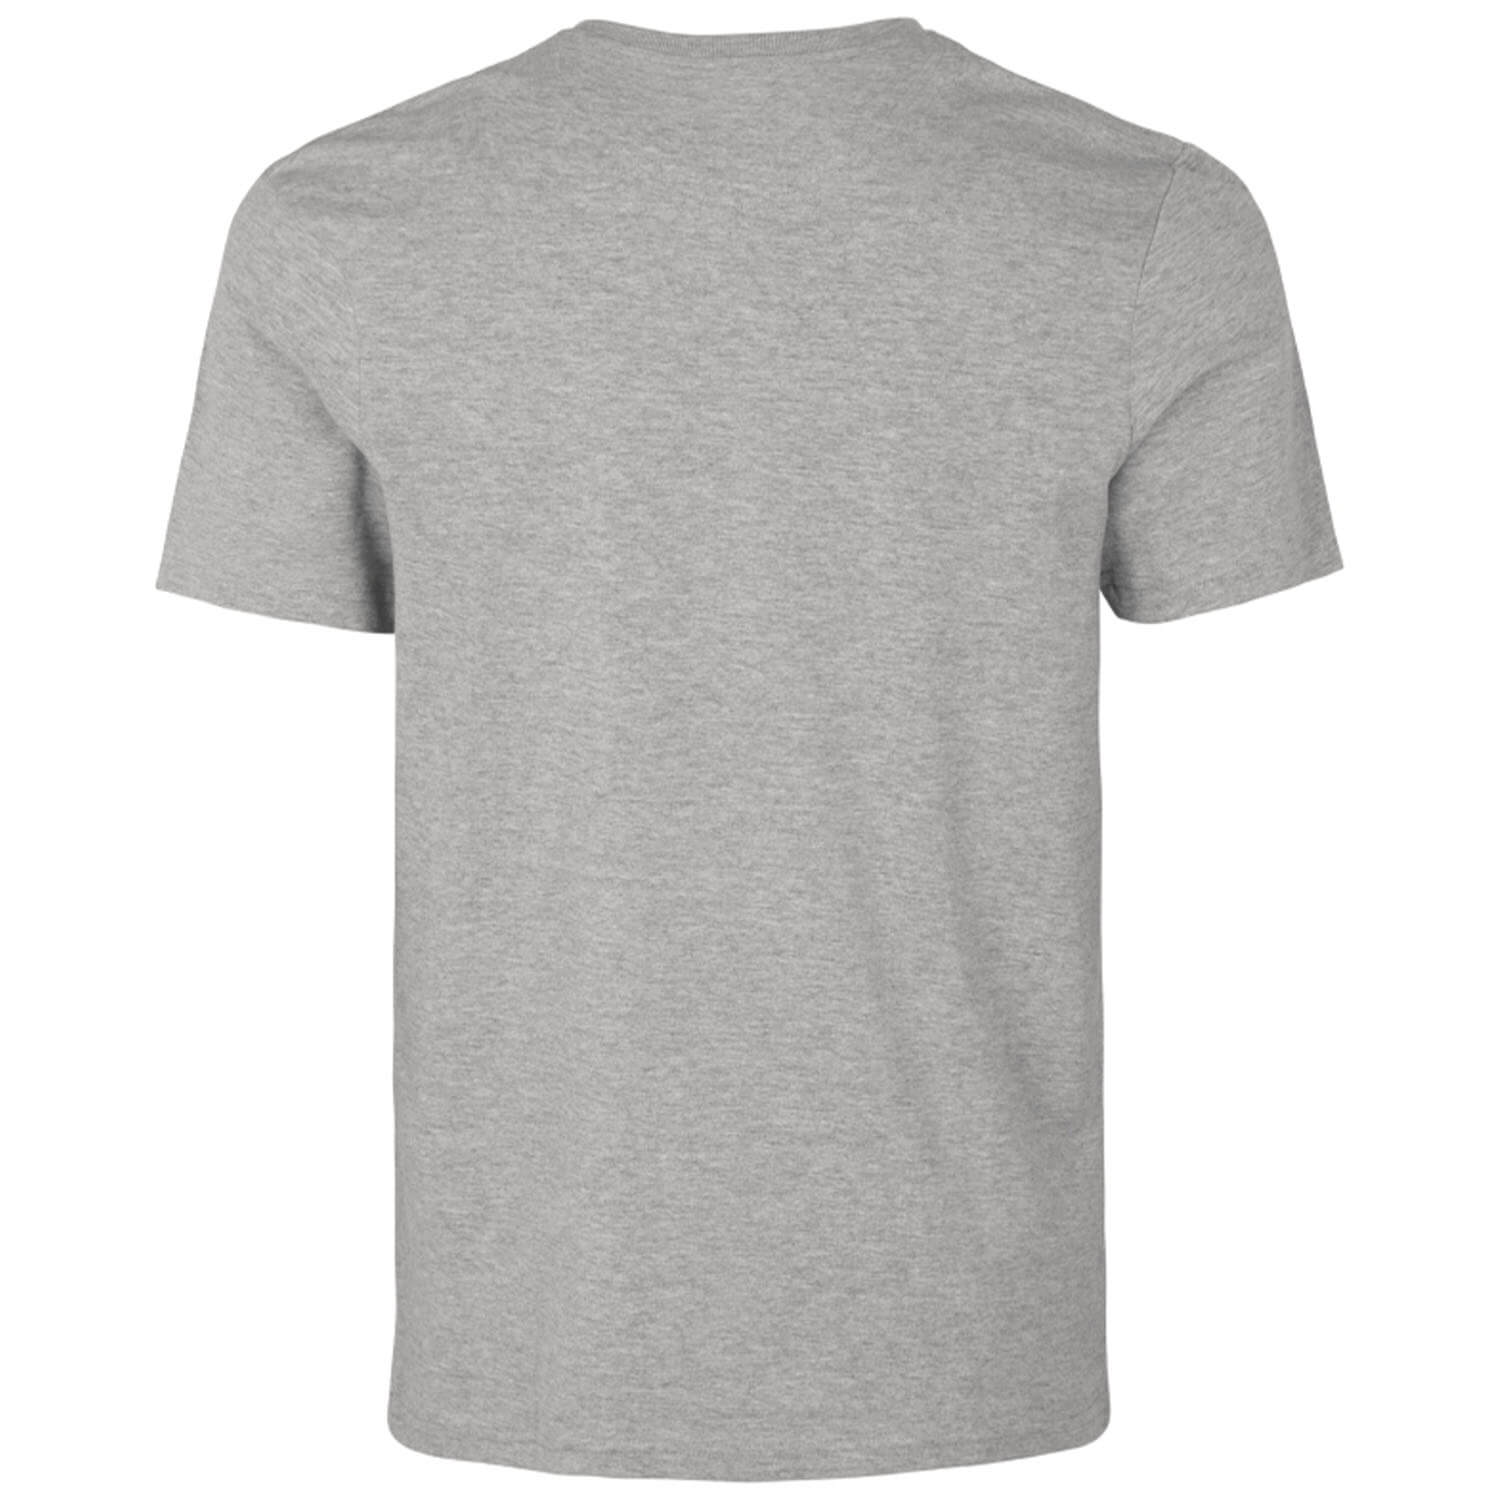  Seeland T-shirt Lanner (Donkergrijs gemêleerd)